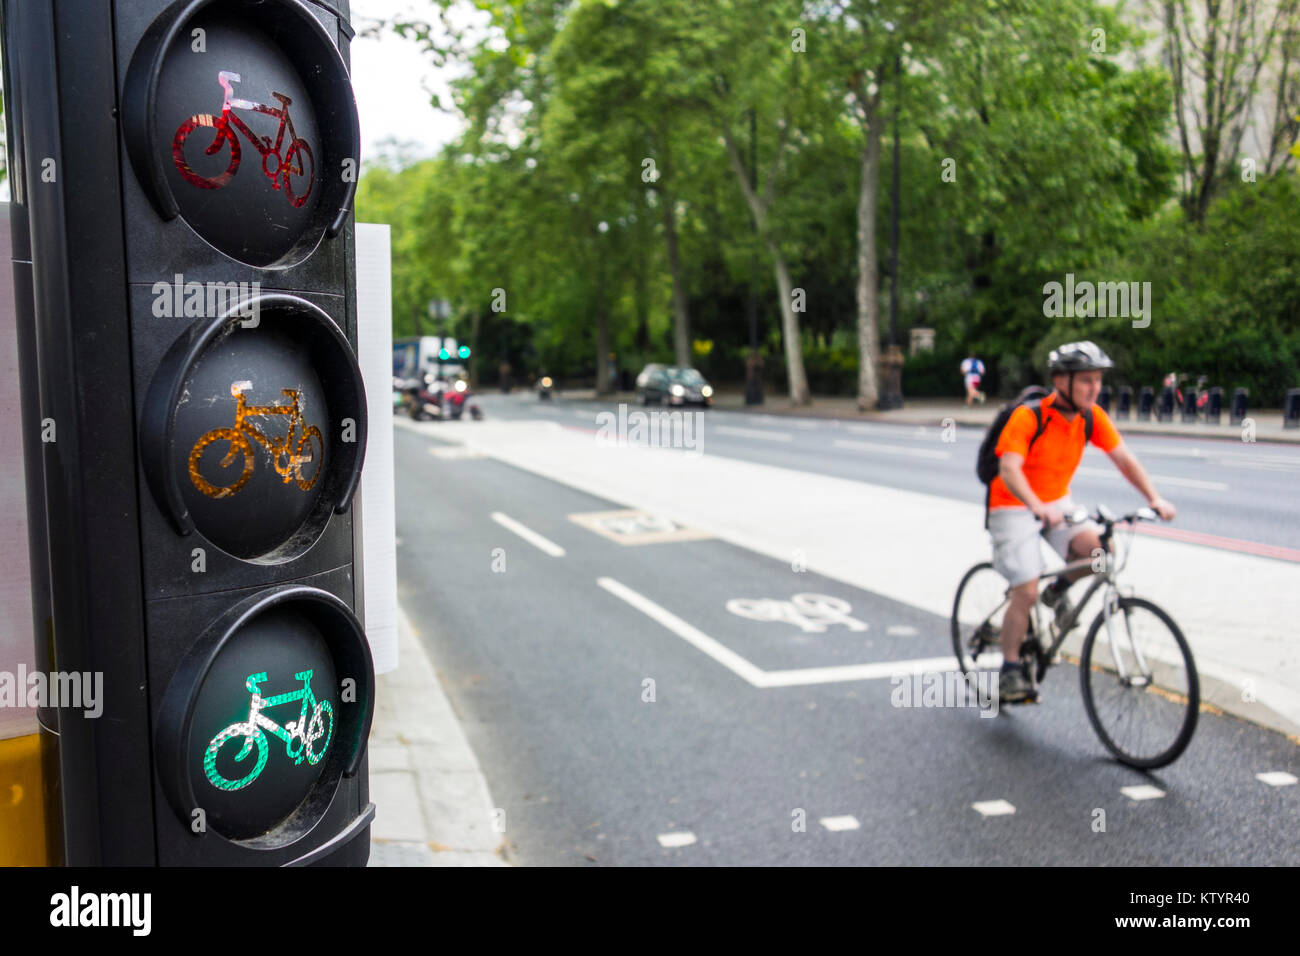 Zyklus Ampel für Fußgänger überqueren Ost-west-Cycle Superhighways, Victoria Embankment Radweg. London, Großbritannien Stockfoto